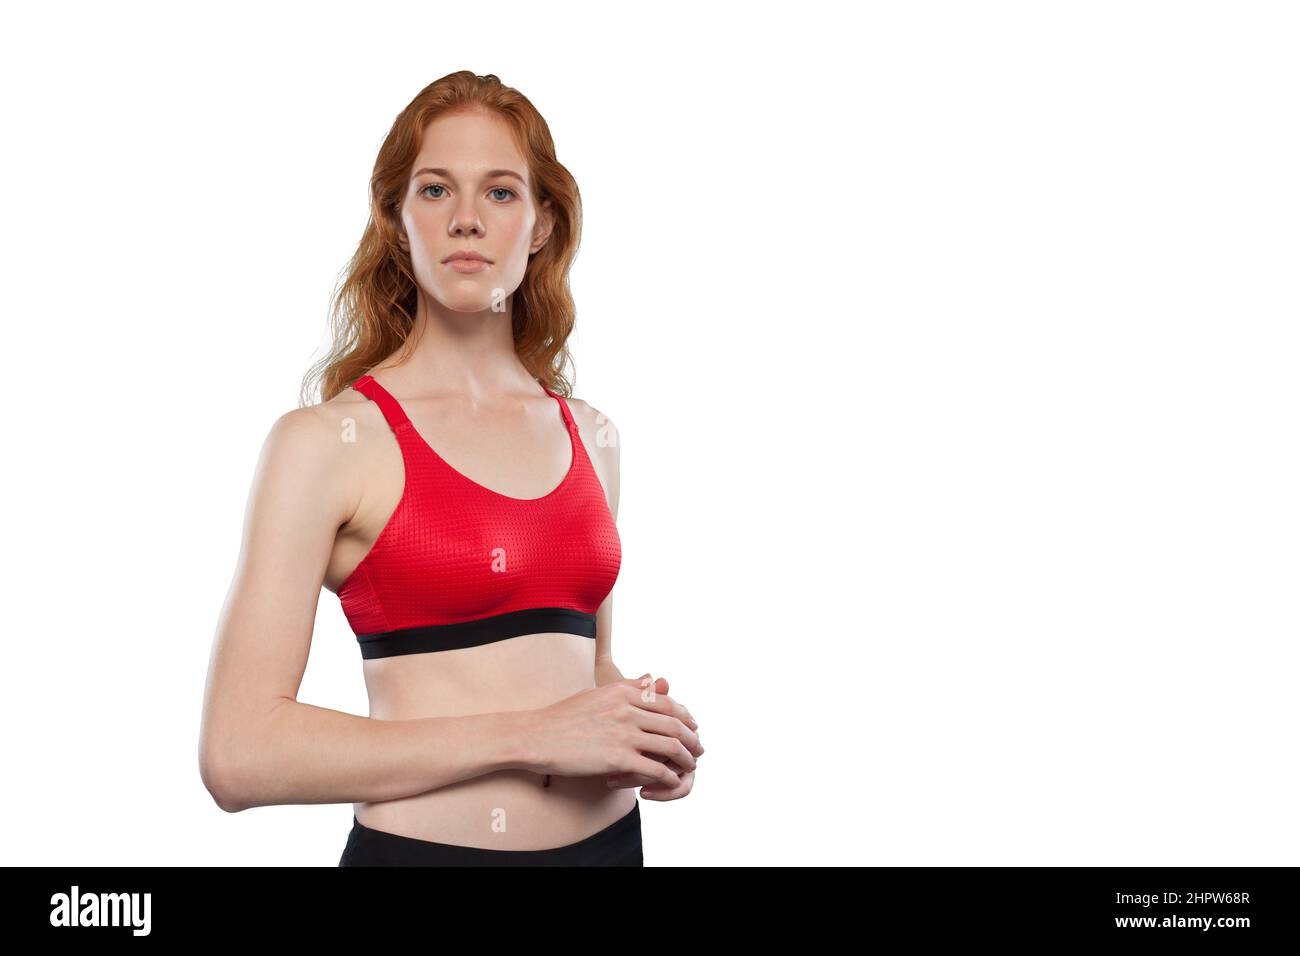 L'athlète féminine pose sur fond blanc. Portrait studio d'une femme portant un débardeur sport rouge. Être comme un héros look Banque D'Images